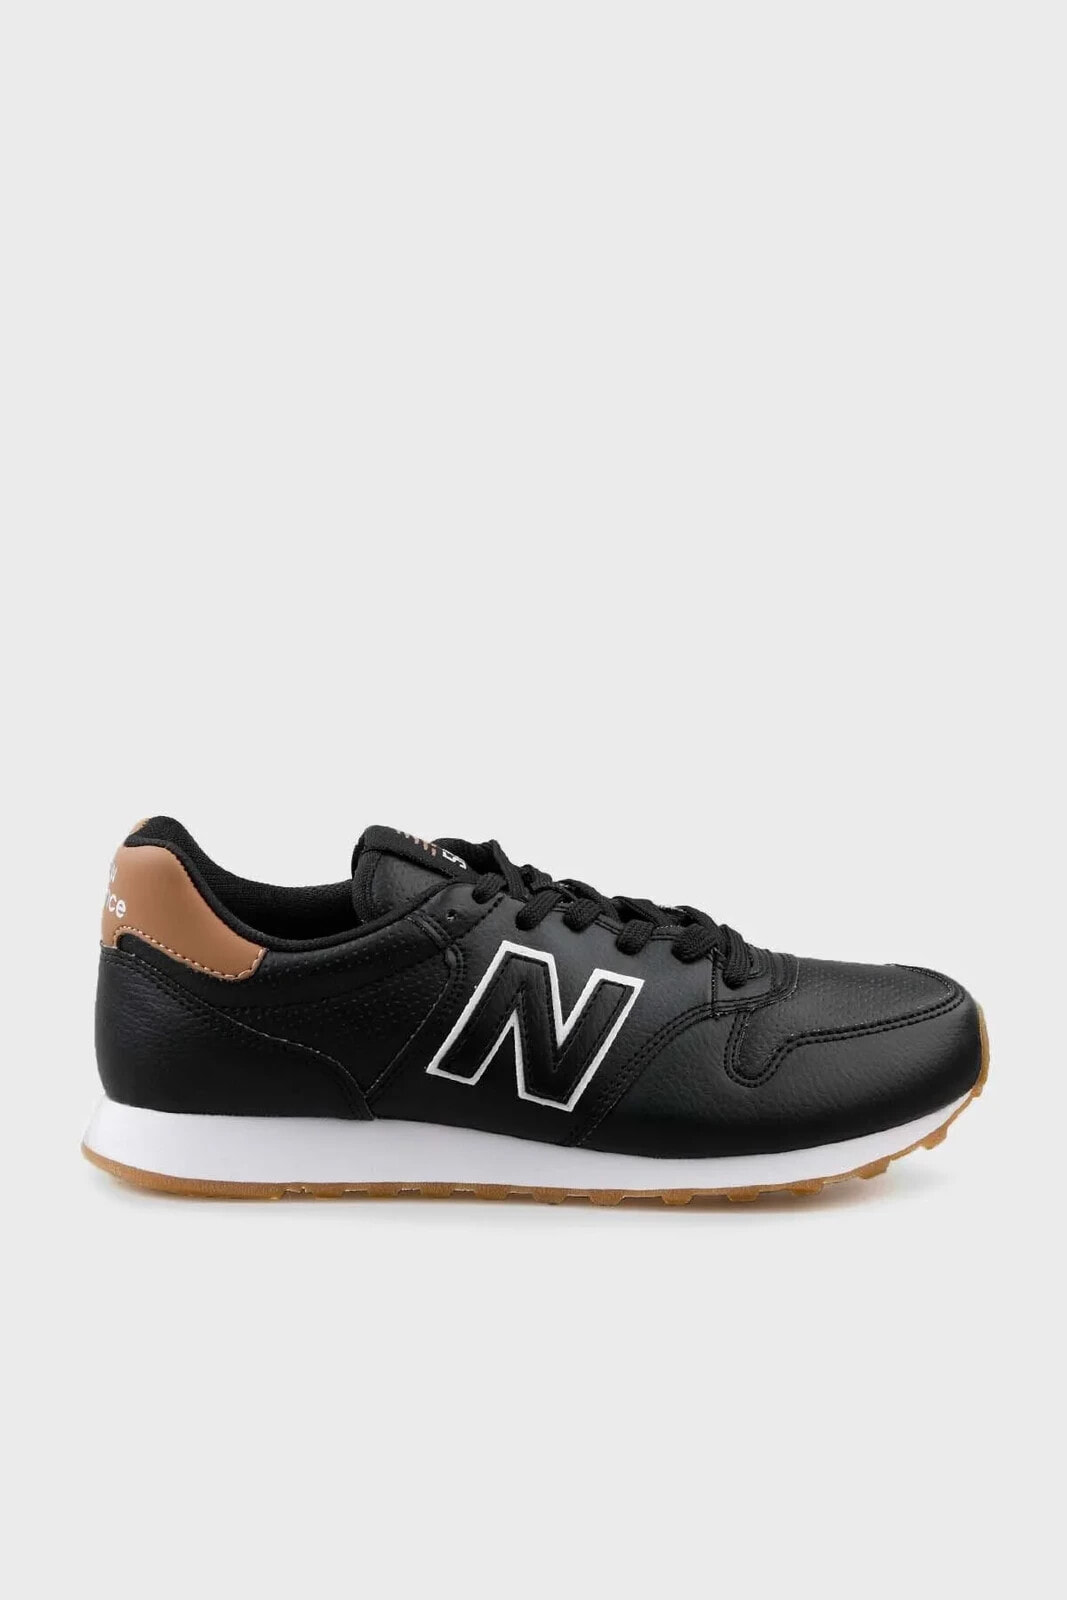 NB Lifestyle Logolu Sneaker Ayakkabı AYAKKABI GW500LBT